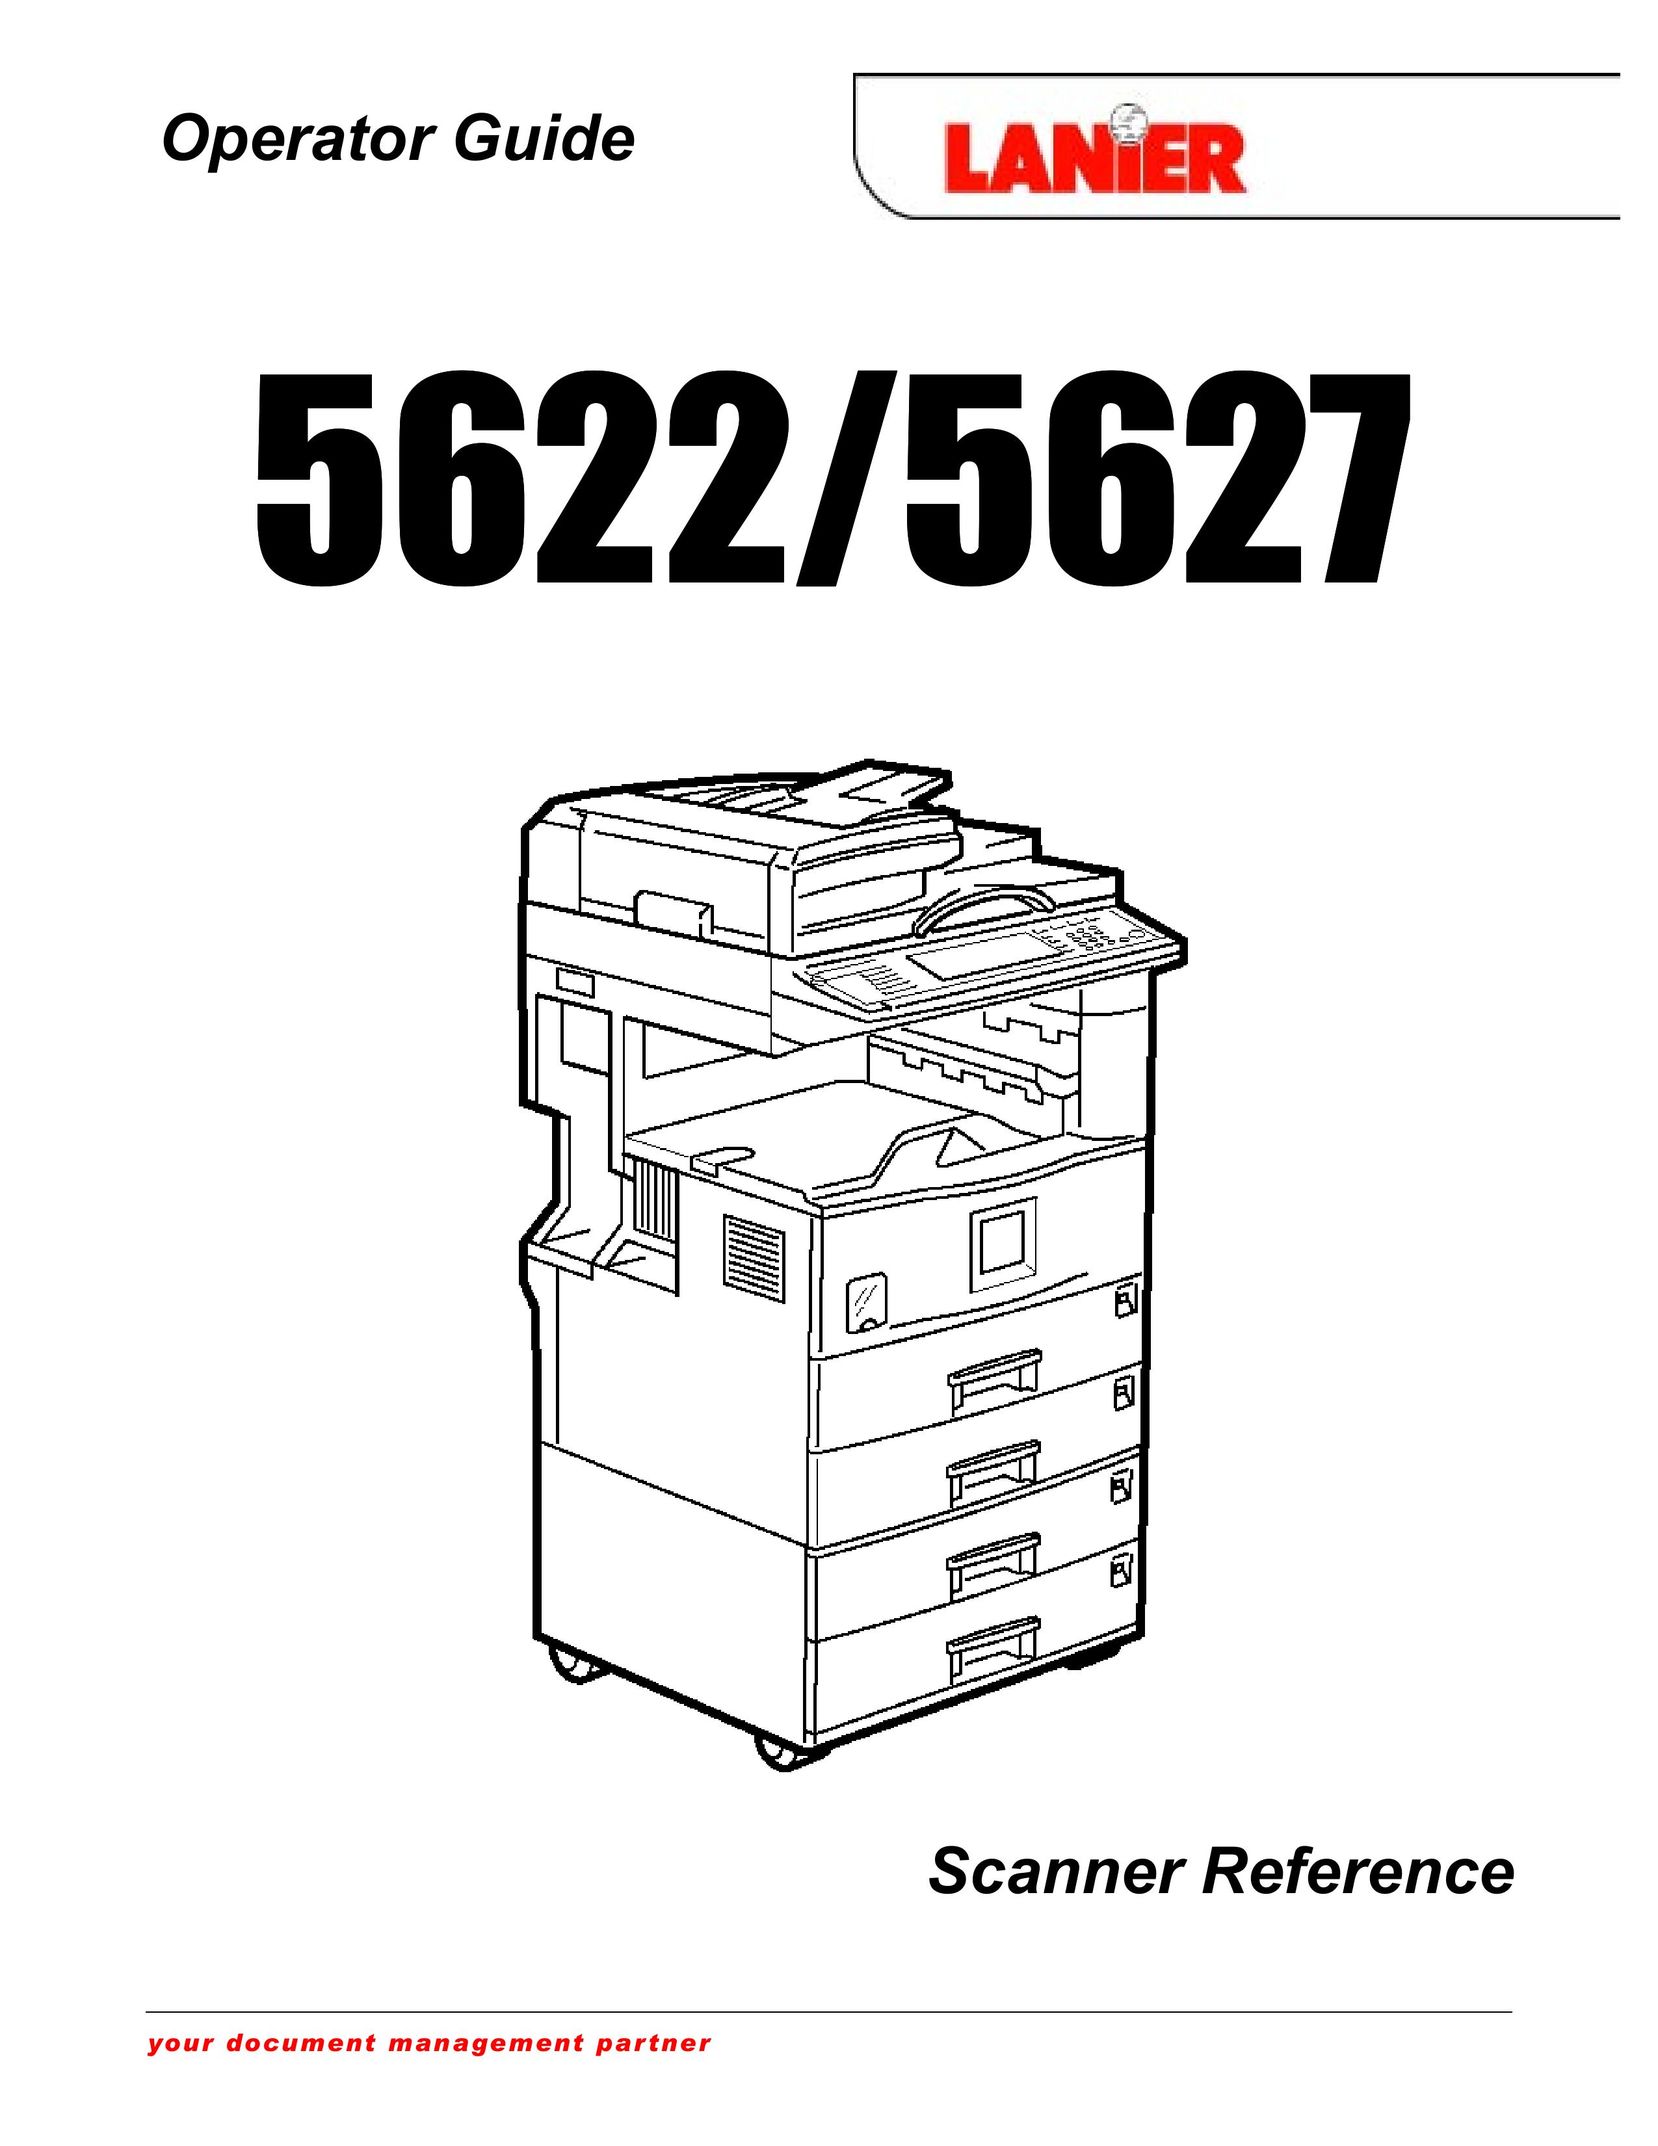 Lanier 5627 Scanner User Manual